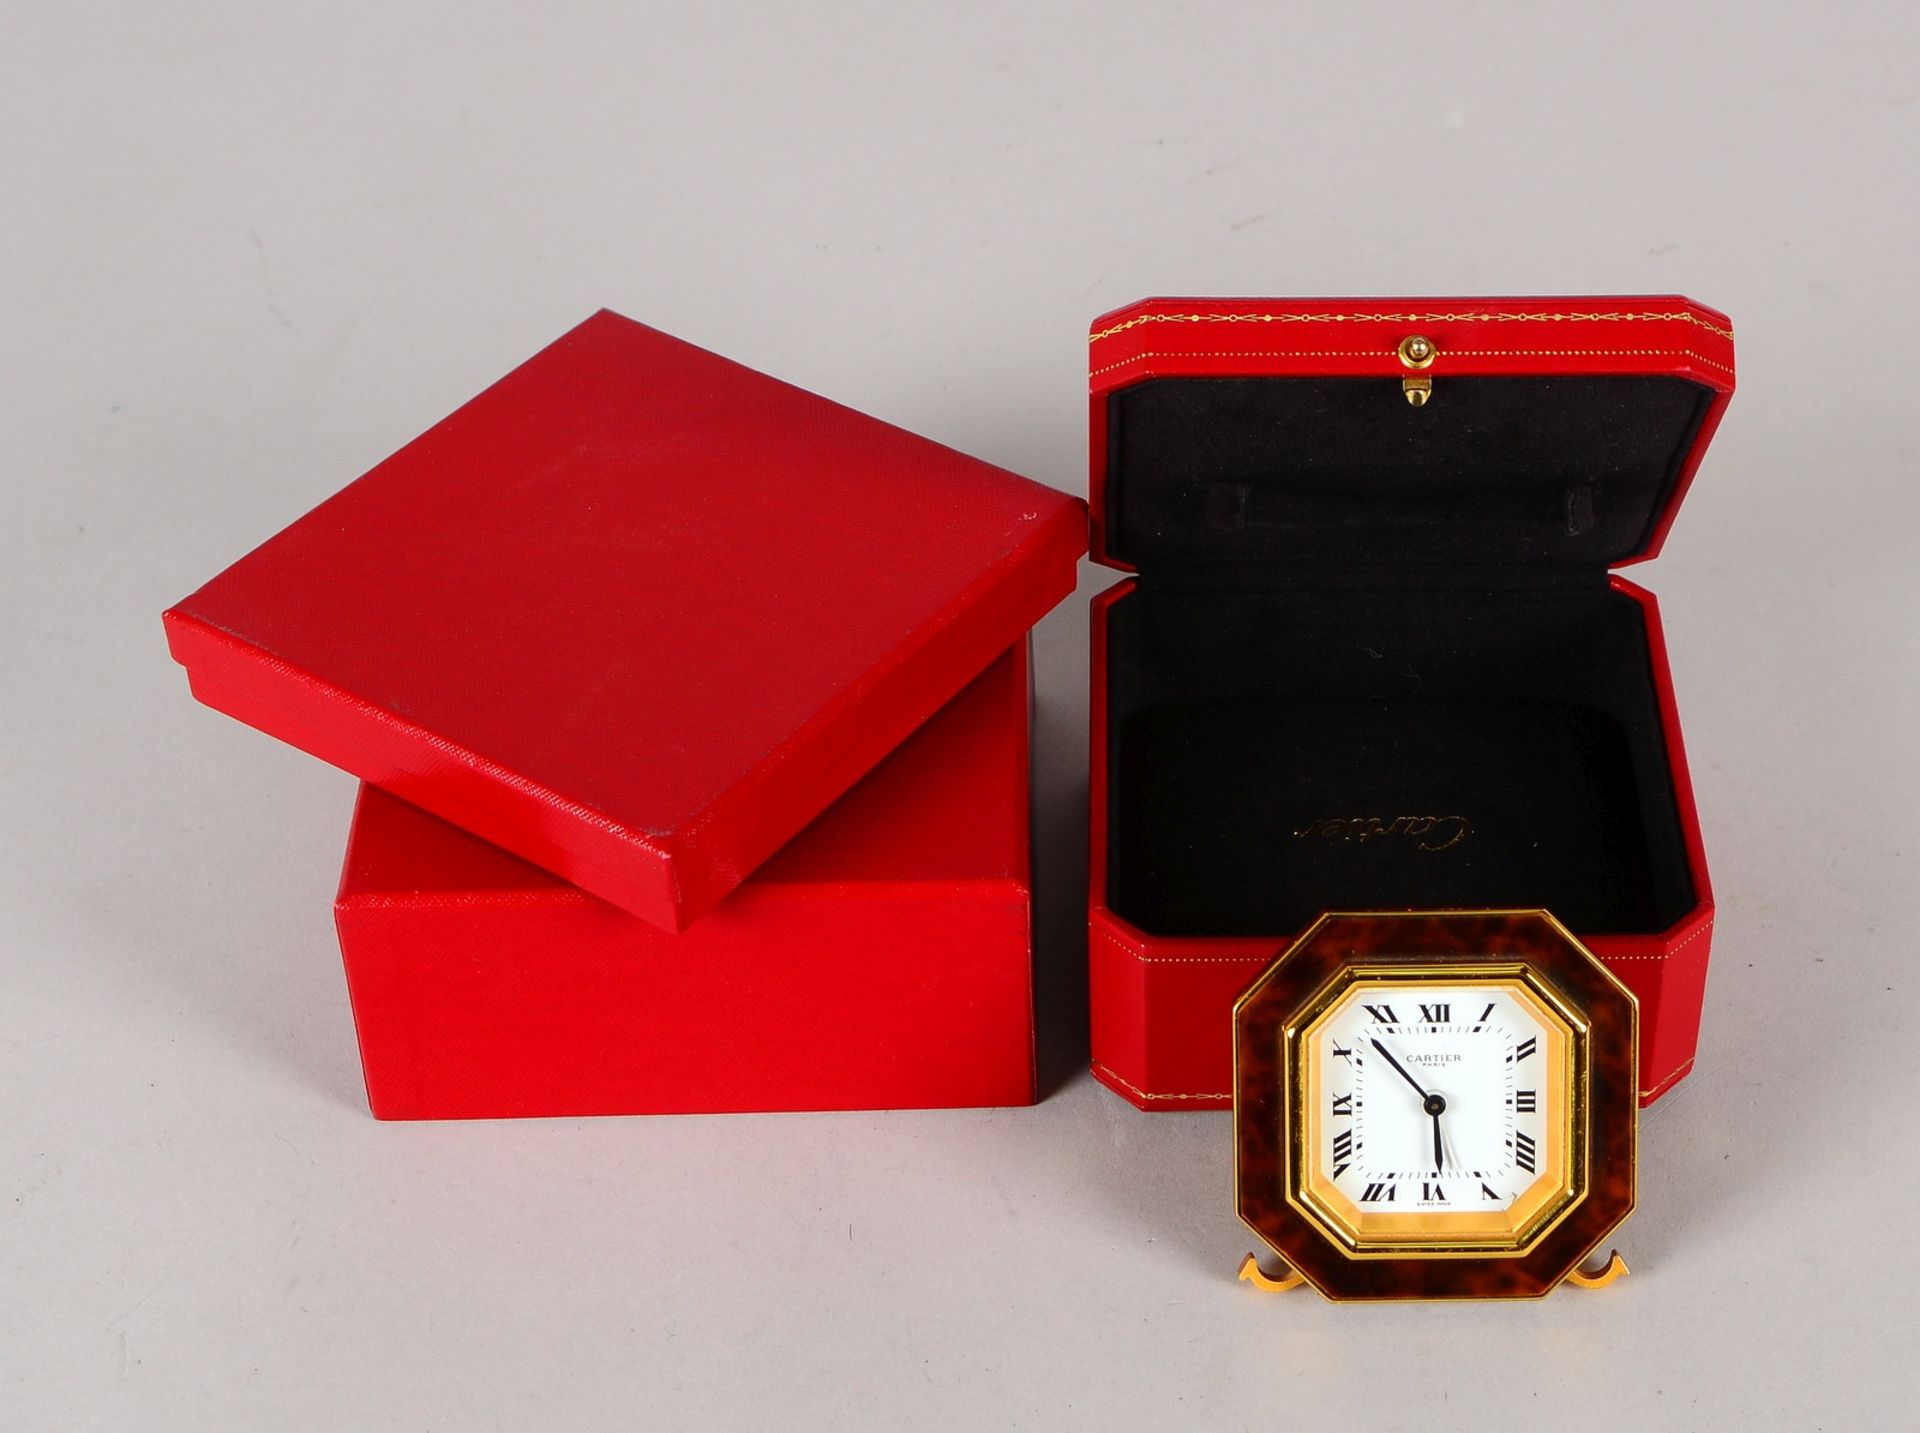 Cartier-Reisewecker/Tischuhr, Lauf- und Weckfunktion, in orig. Verkaufsbox